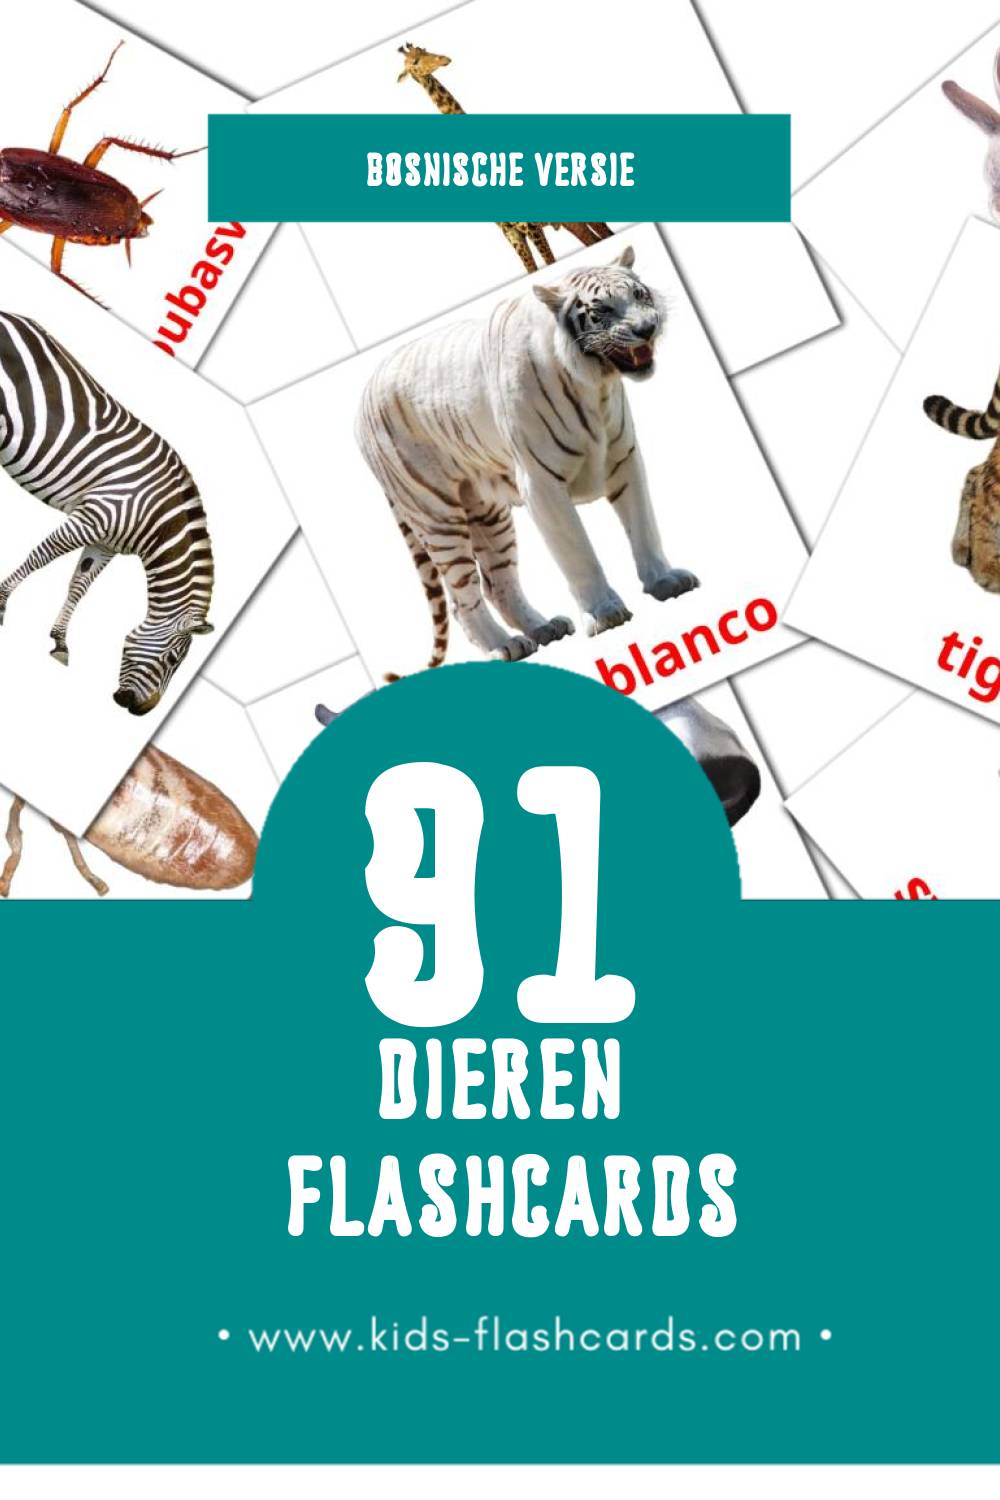 Visuele Životinje Flashcards voor Kleuters (69 kaarten in het Bosnisch)